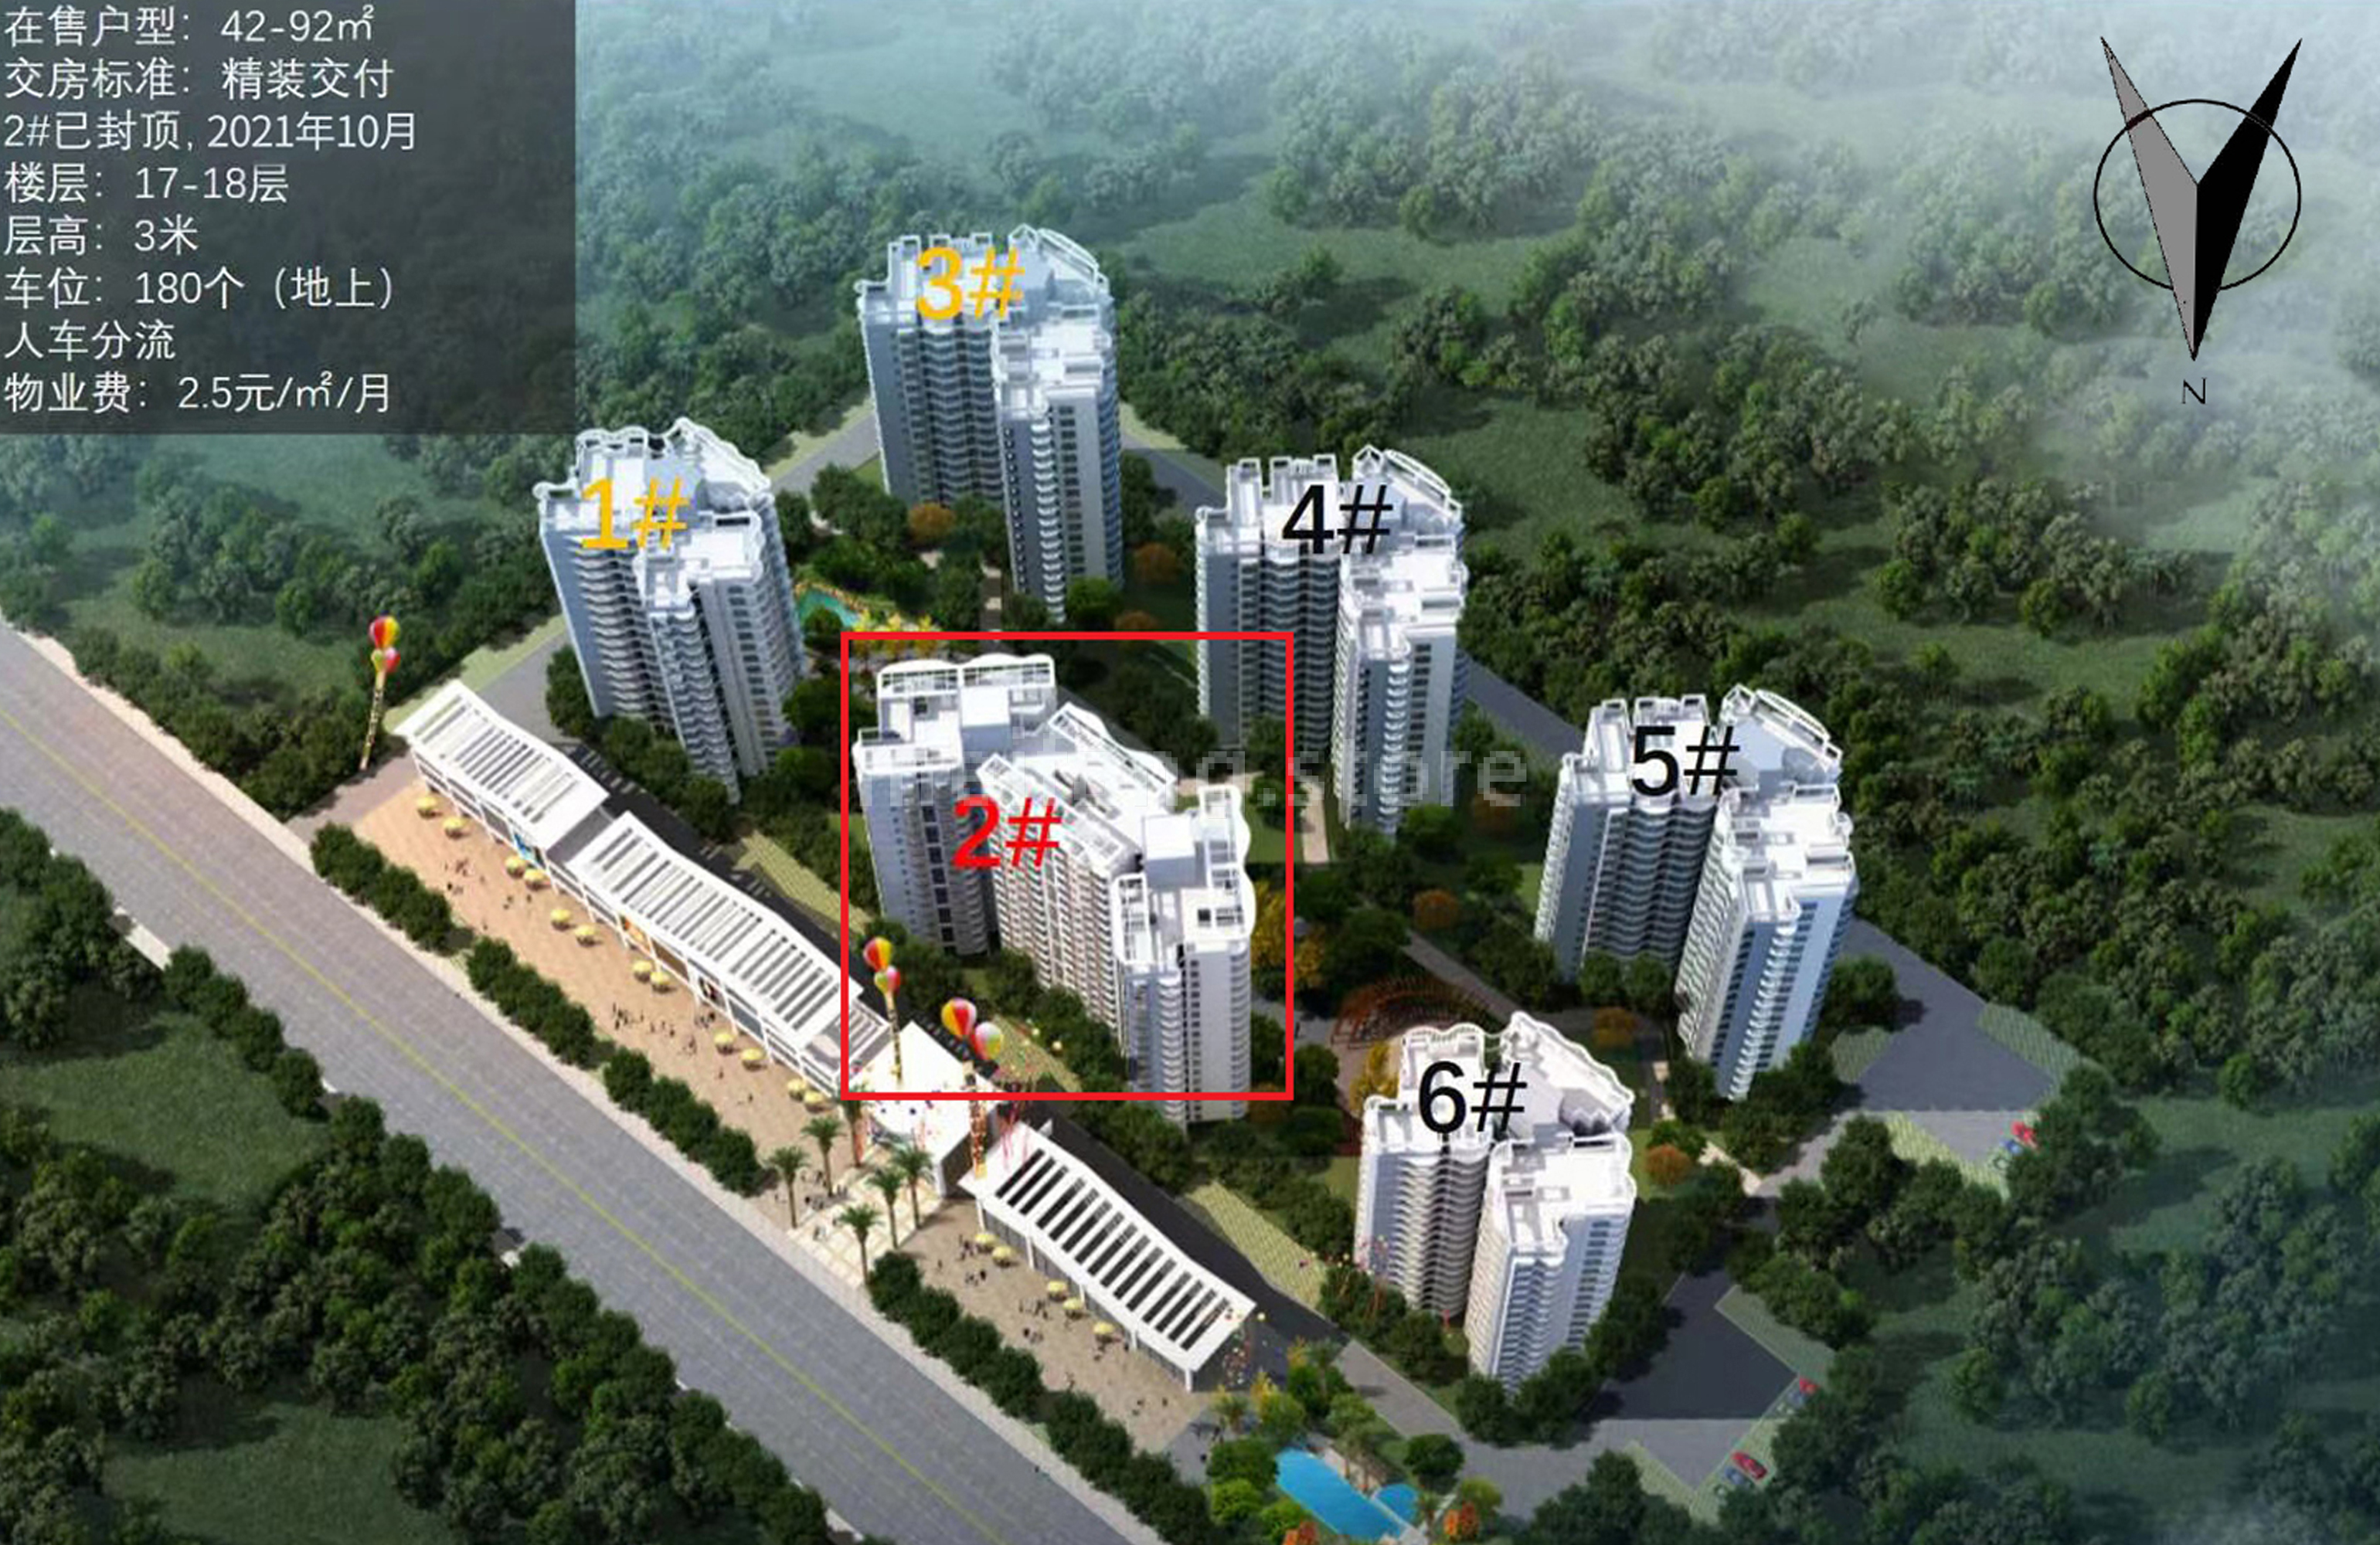 傲景观澜九龙湾国际温泉花园楼栋分布图